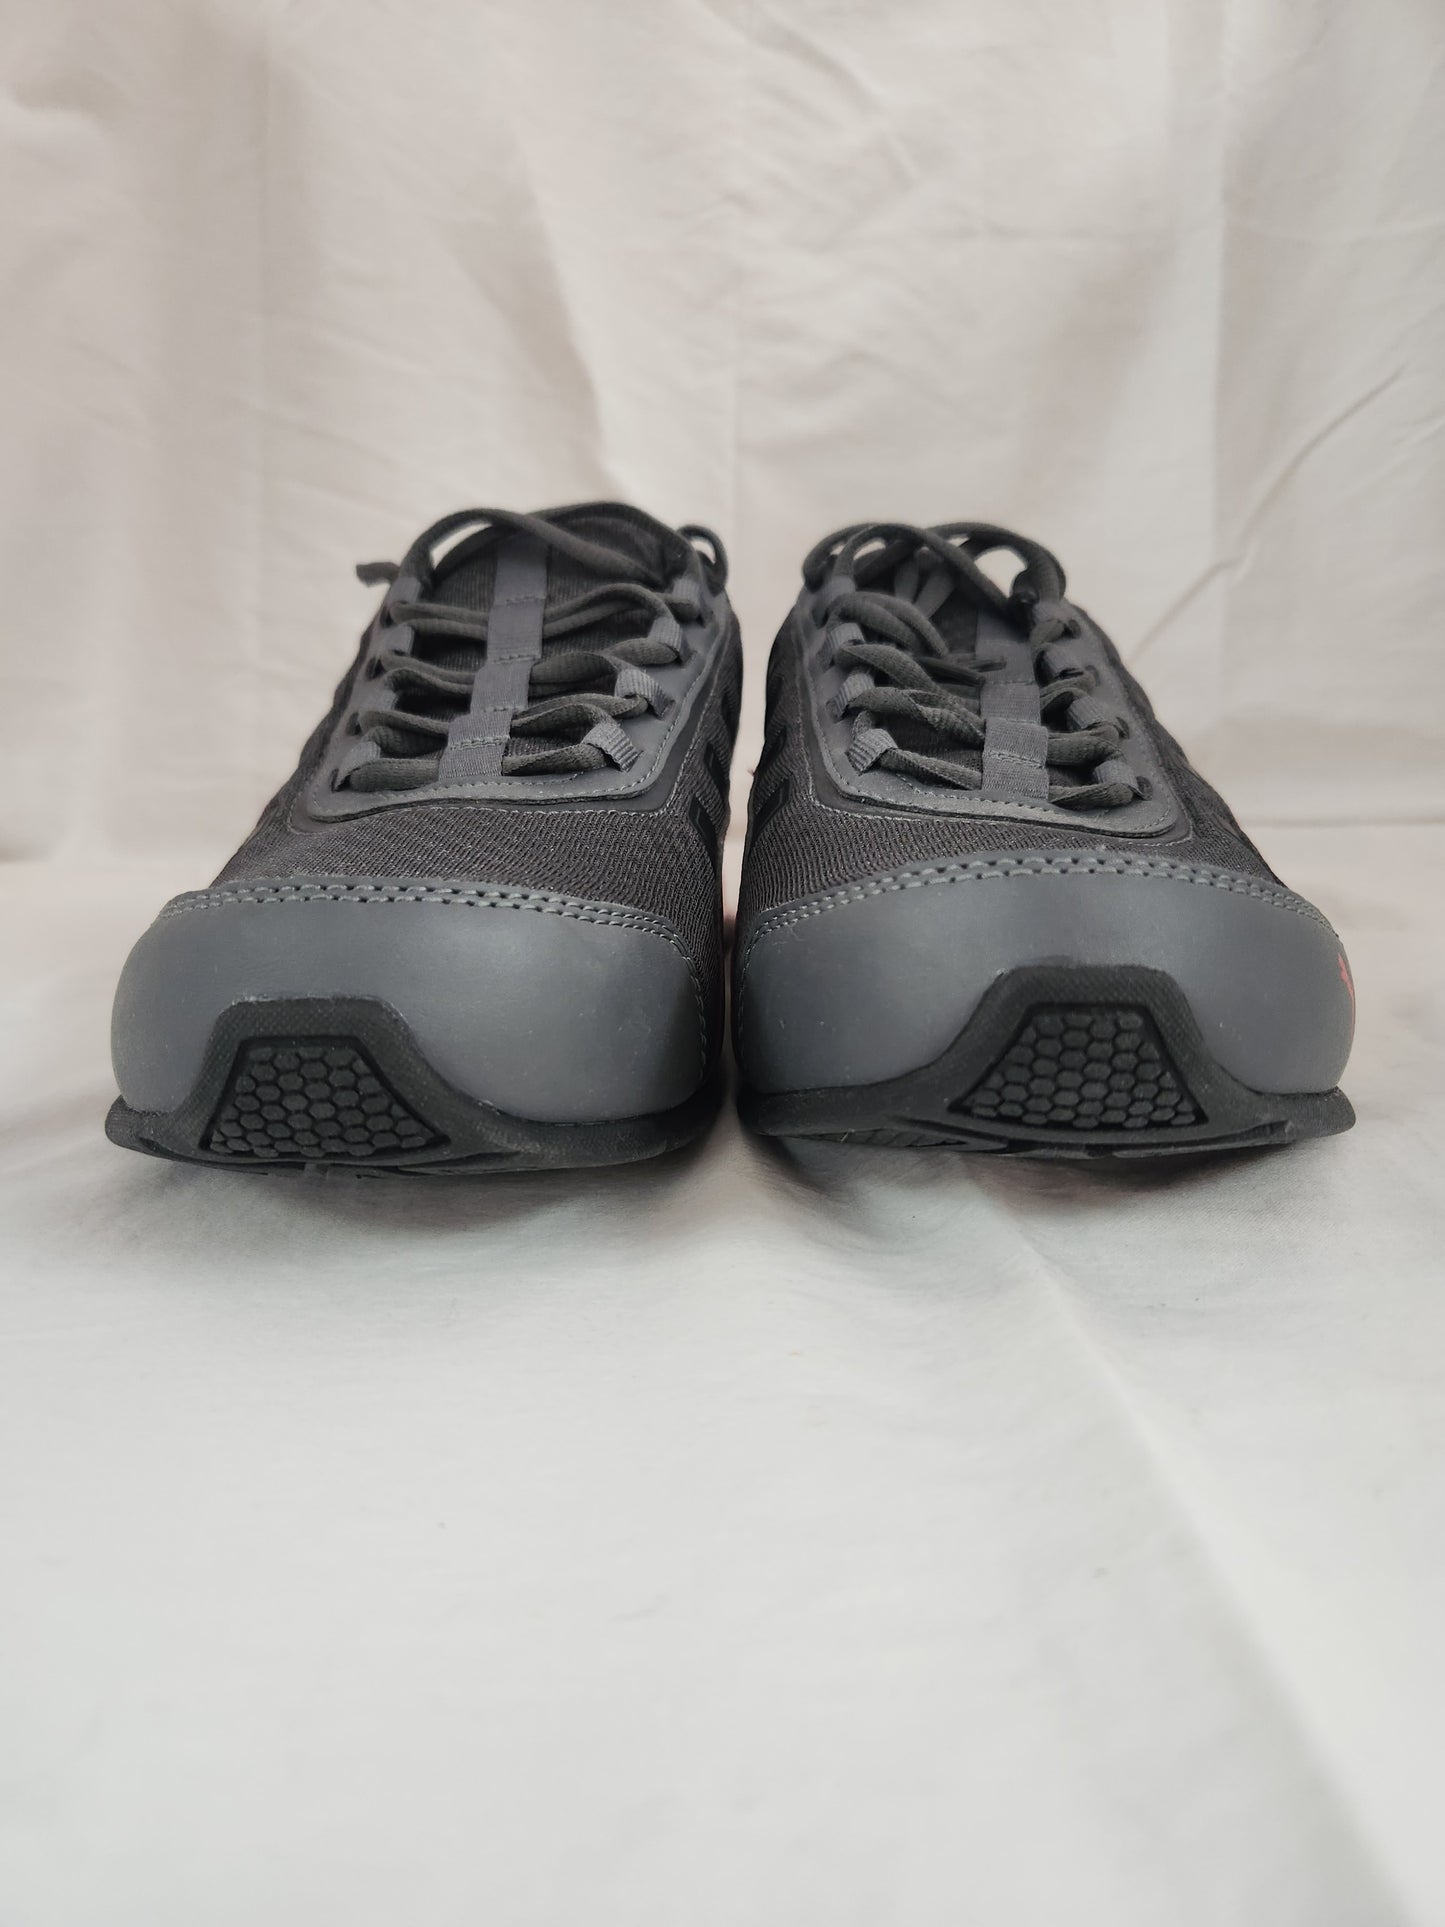 Men's PUMA Leader VT Mesh Sneaker 365292 01 - Size: 11 (No Box)